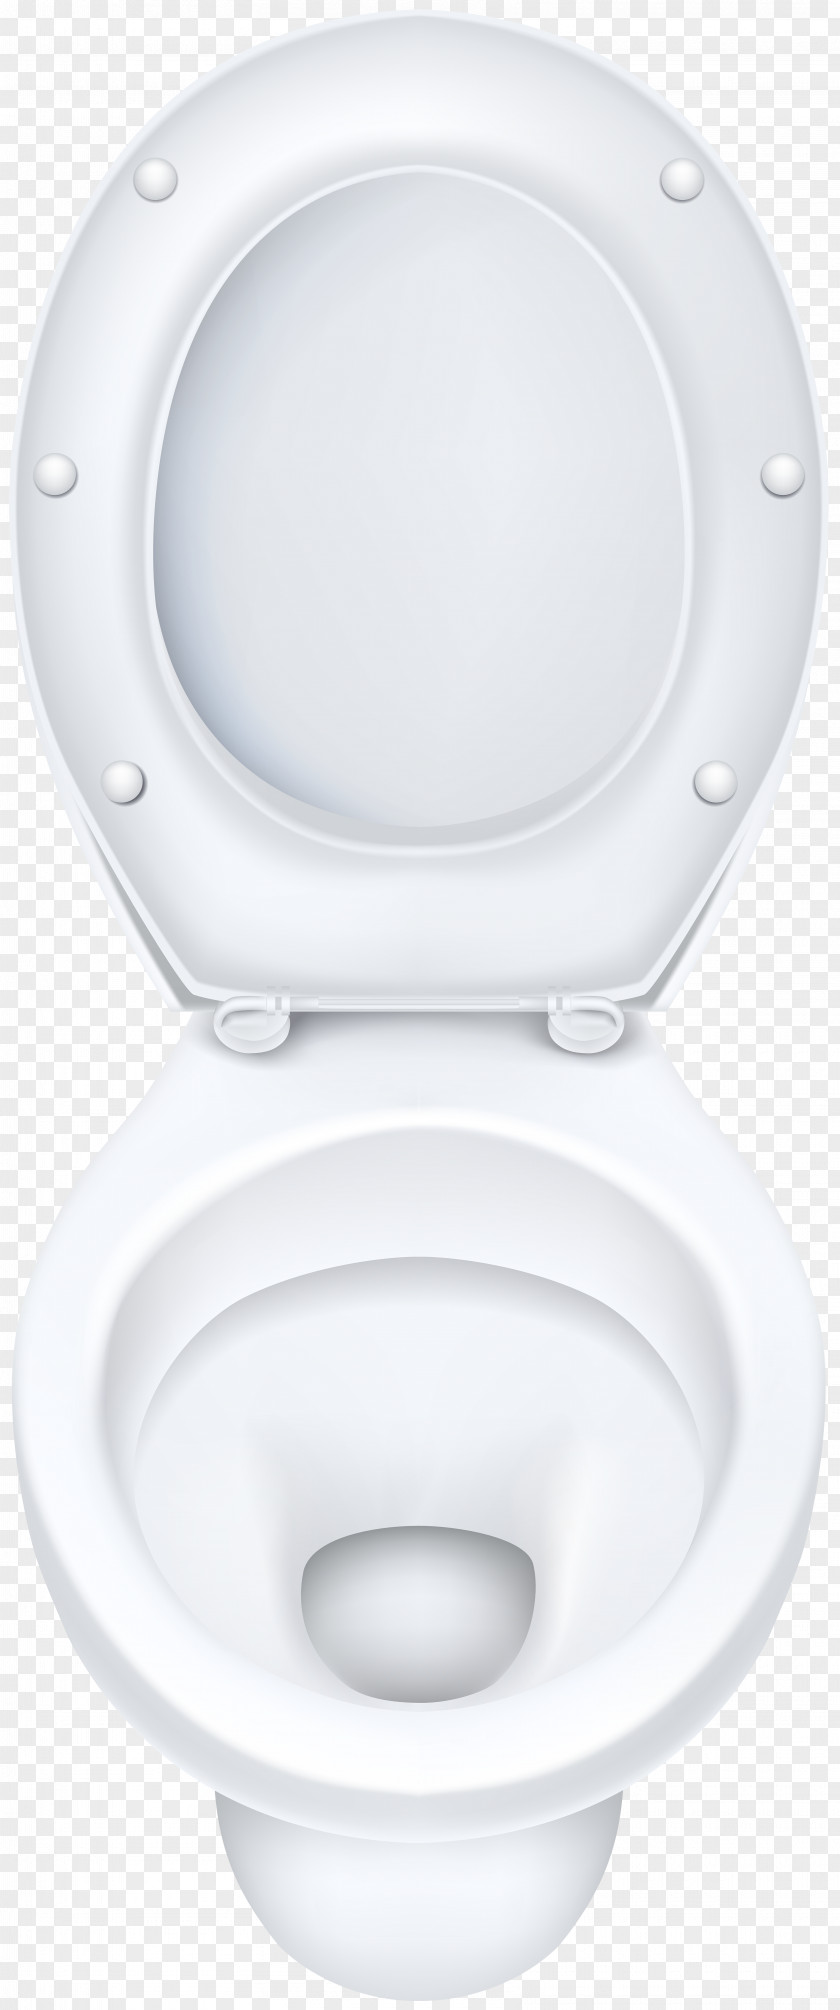 Sink Toilet & Bidet Seats Tap Bathroom PNG